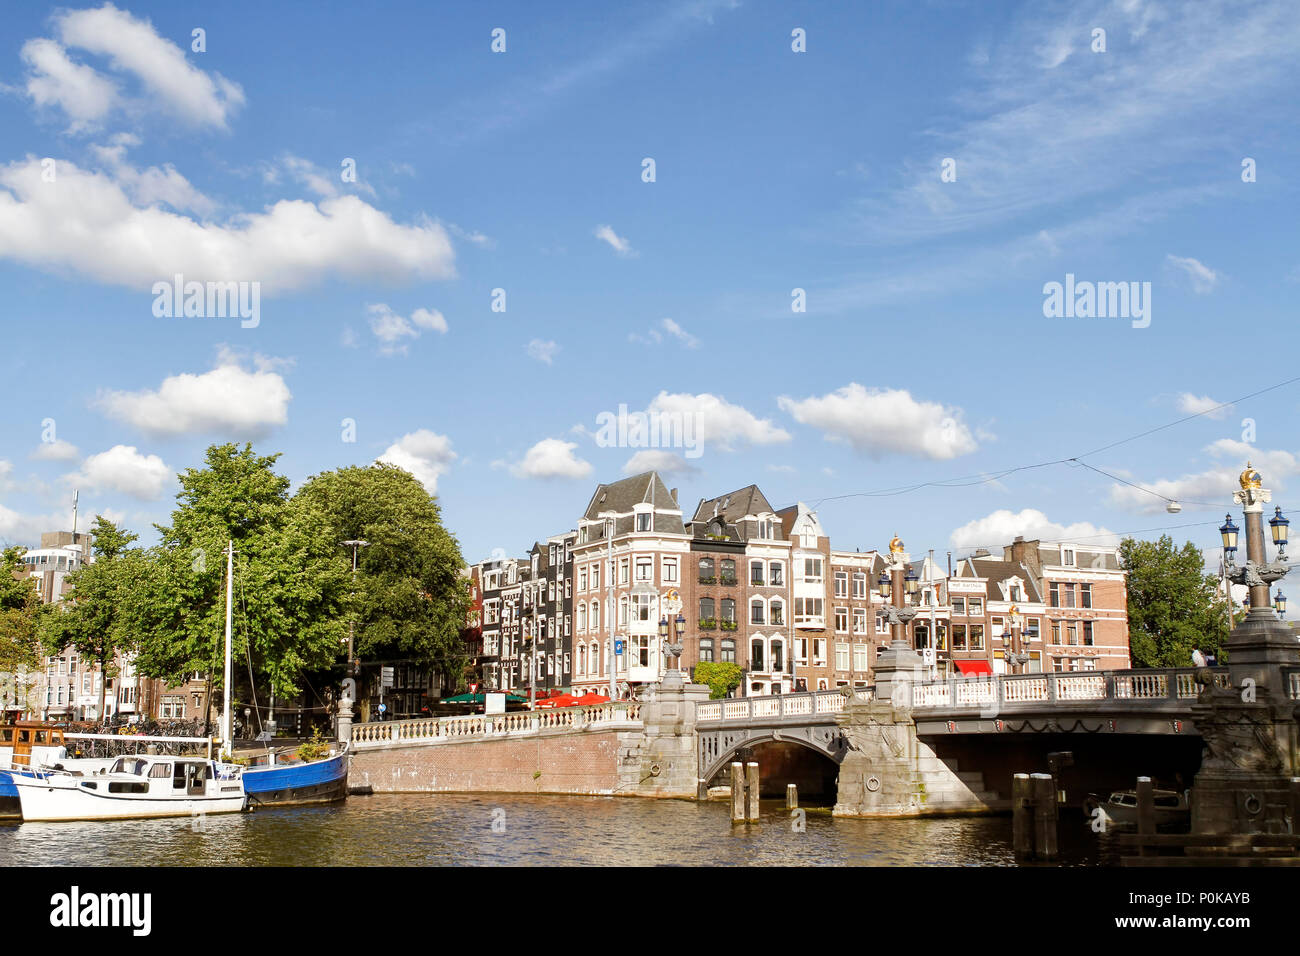 Amsterdam, capital de los Países Bajos, tiene más de cien kilómetros de canales, sobre 90 islas y 1.500 puentes. Foto de stock